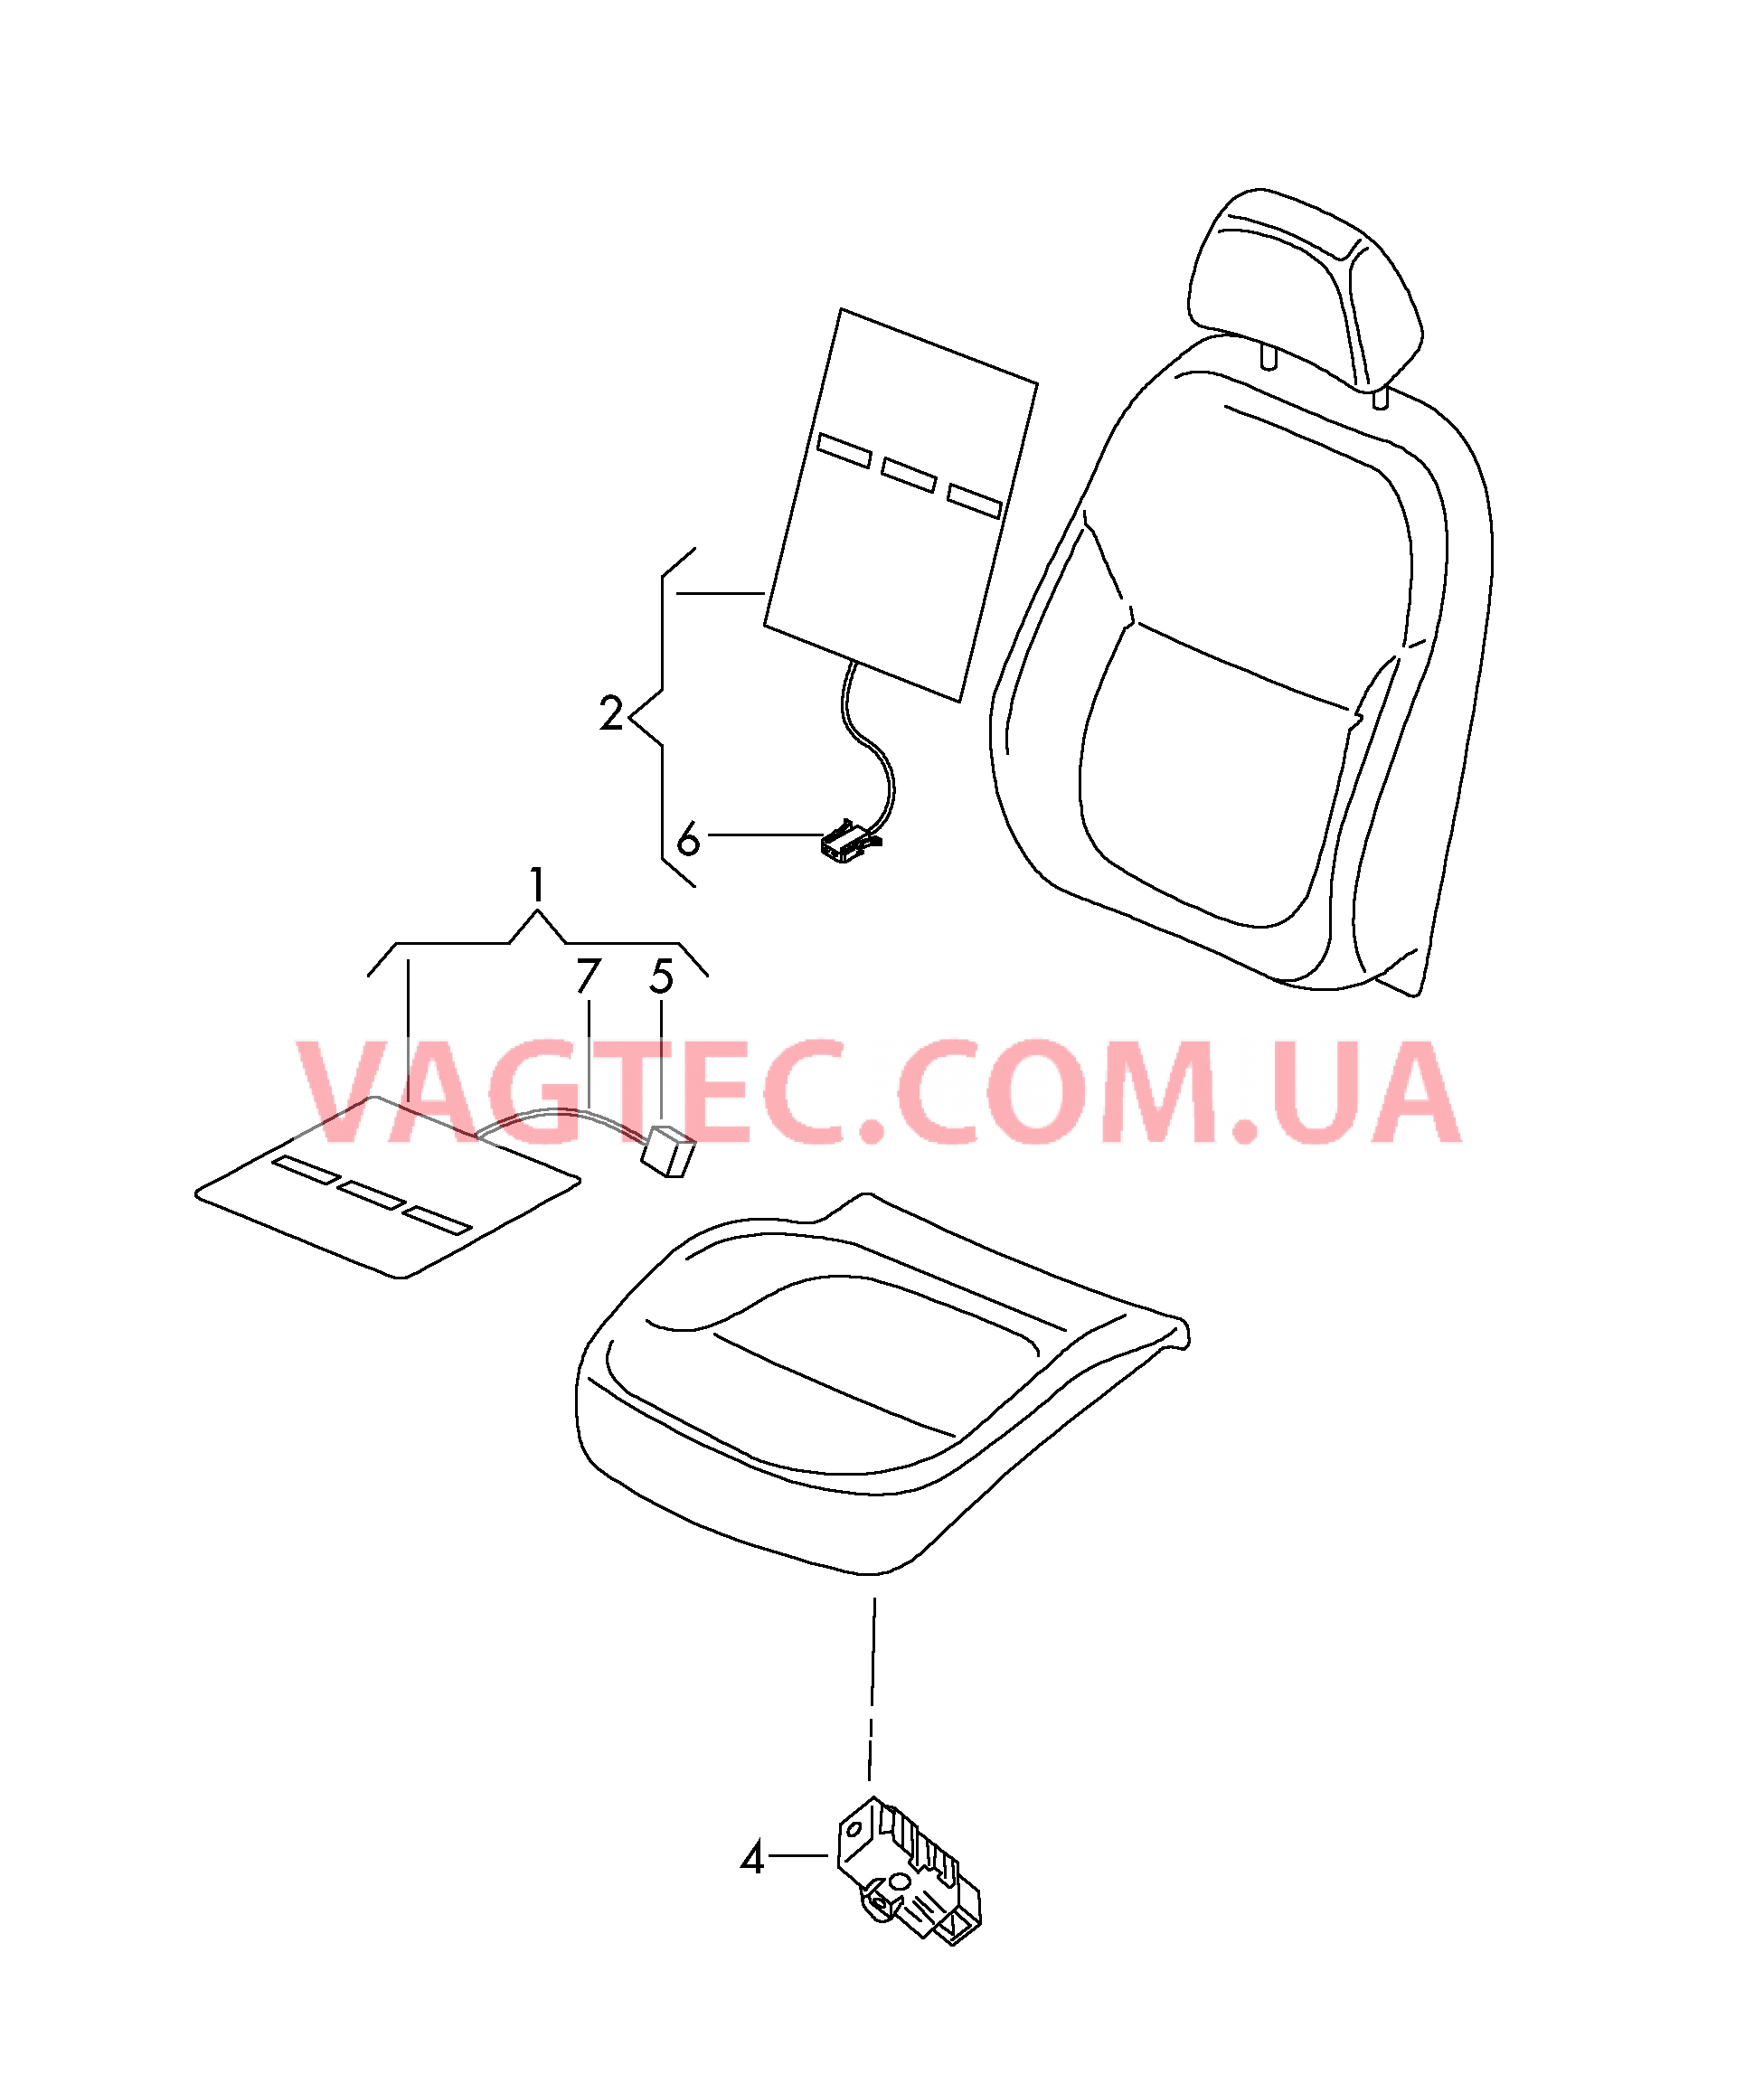 Подушка сиденья и спинка с обогревом  для SKODA YETI 2016